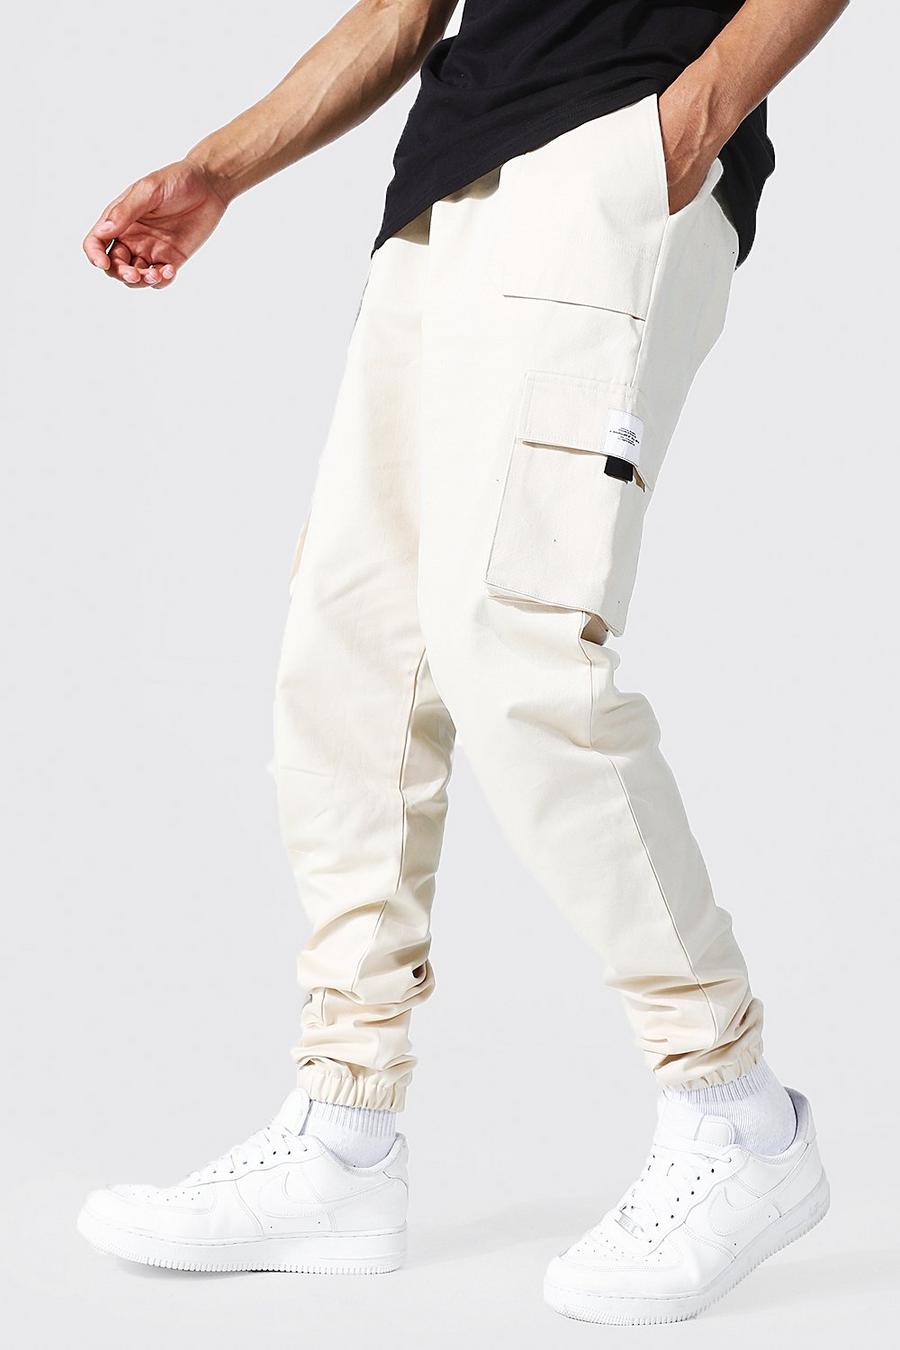 Pantaloni tuta Tall stile Cargo in twill con etichetta e cintura, Ecru blanco